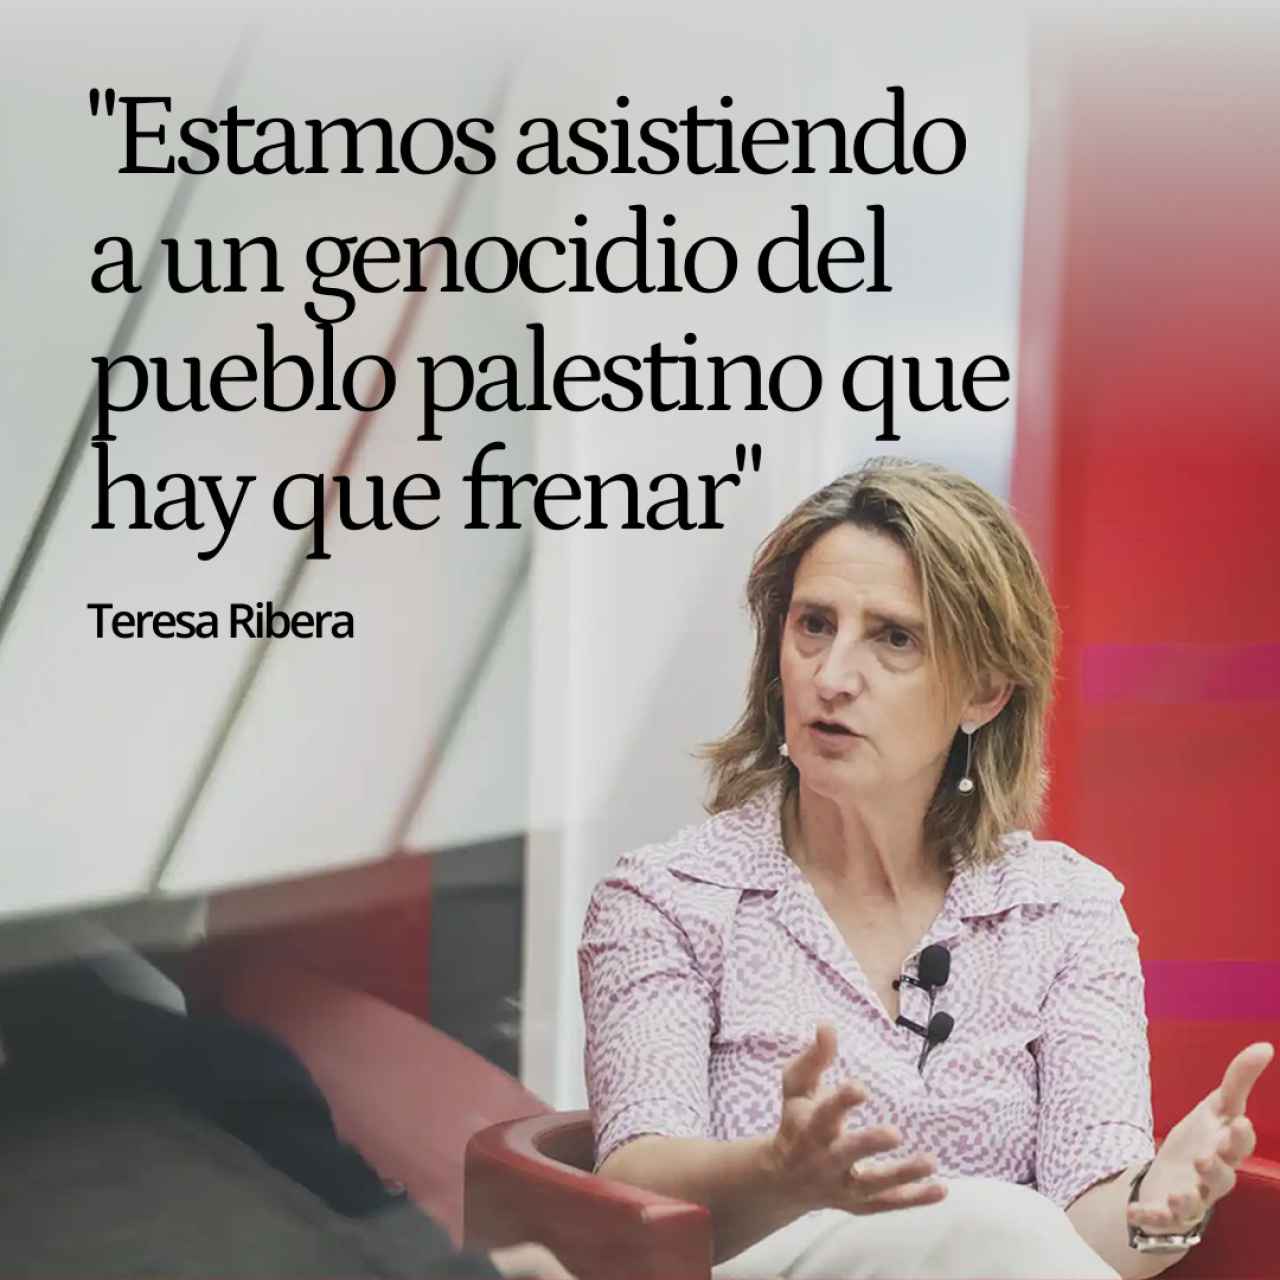 Teresa Ribera: "Estamos asistiendo a un genocidio del pueblo palestino que hay que frenar ya"